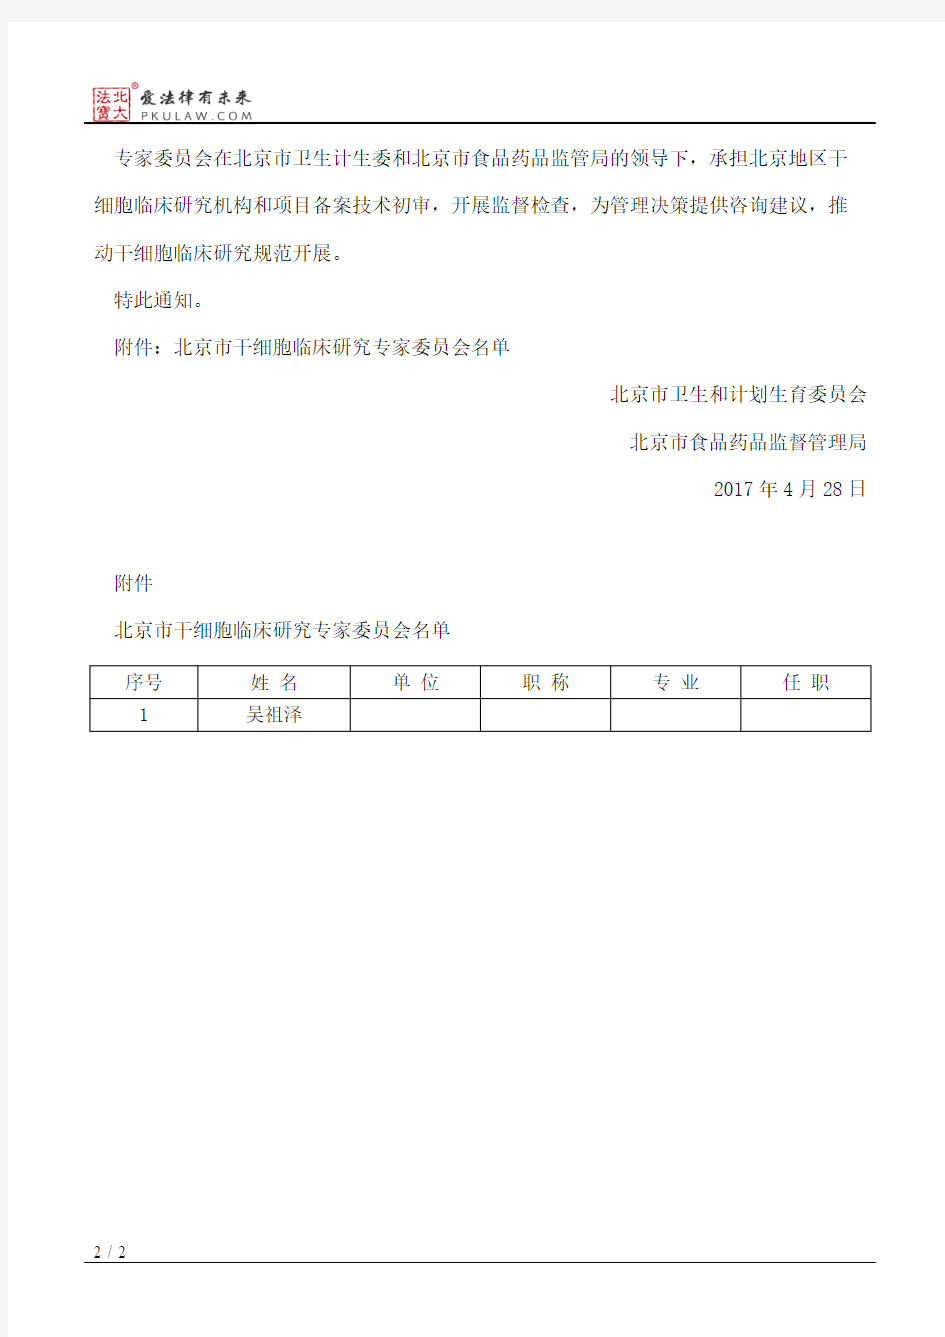 北京市卫生和计划生育委员会、北京市食品药品监督管理局关于成立